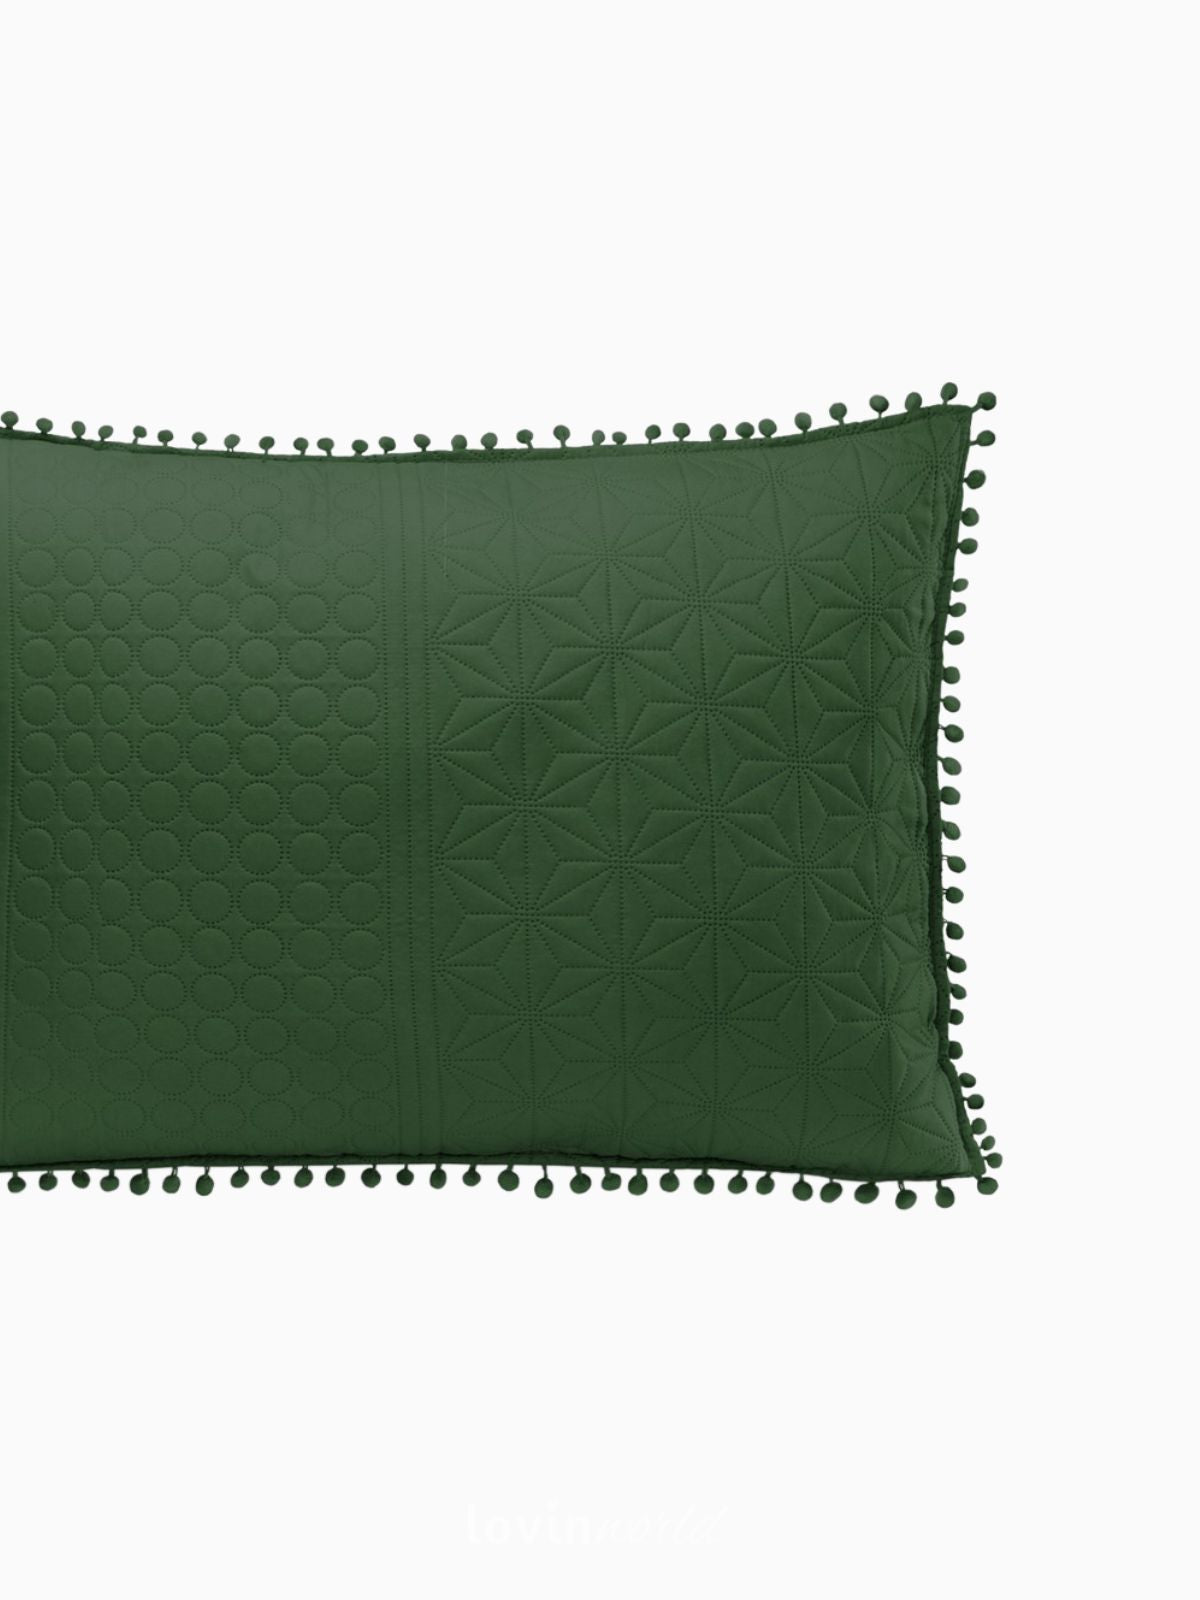 Cuscino decorativo Meadore in colore verde 50x70 cm.-4